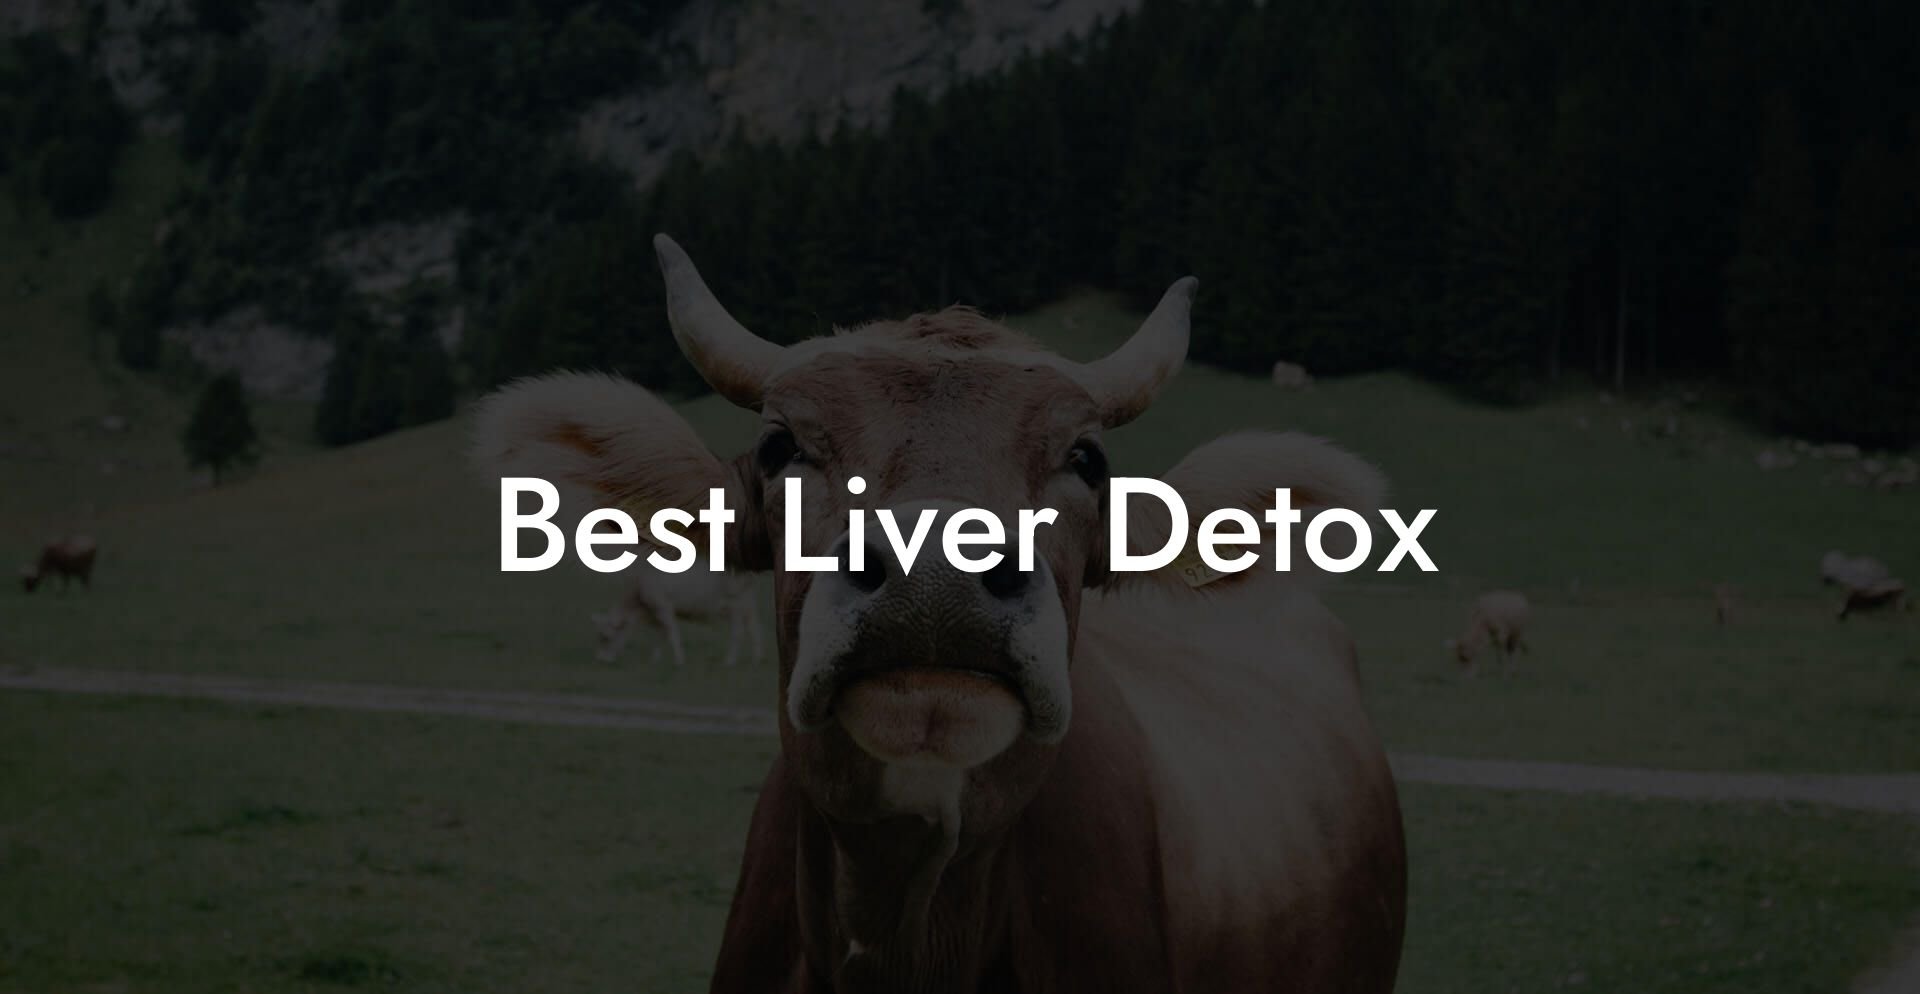 Best Liver Detox